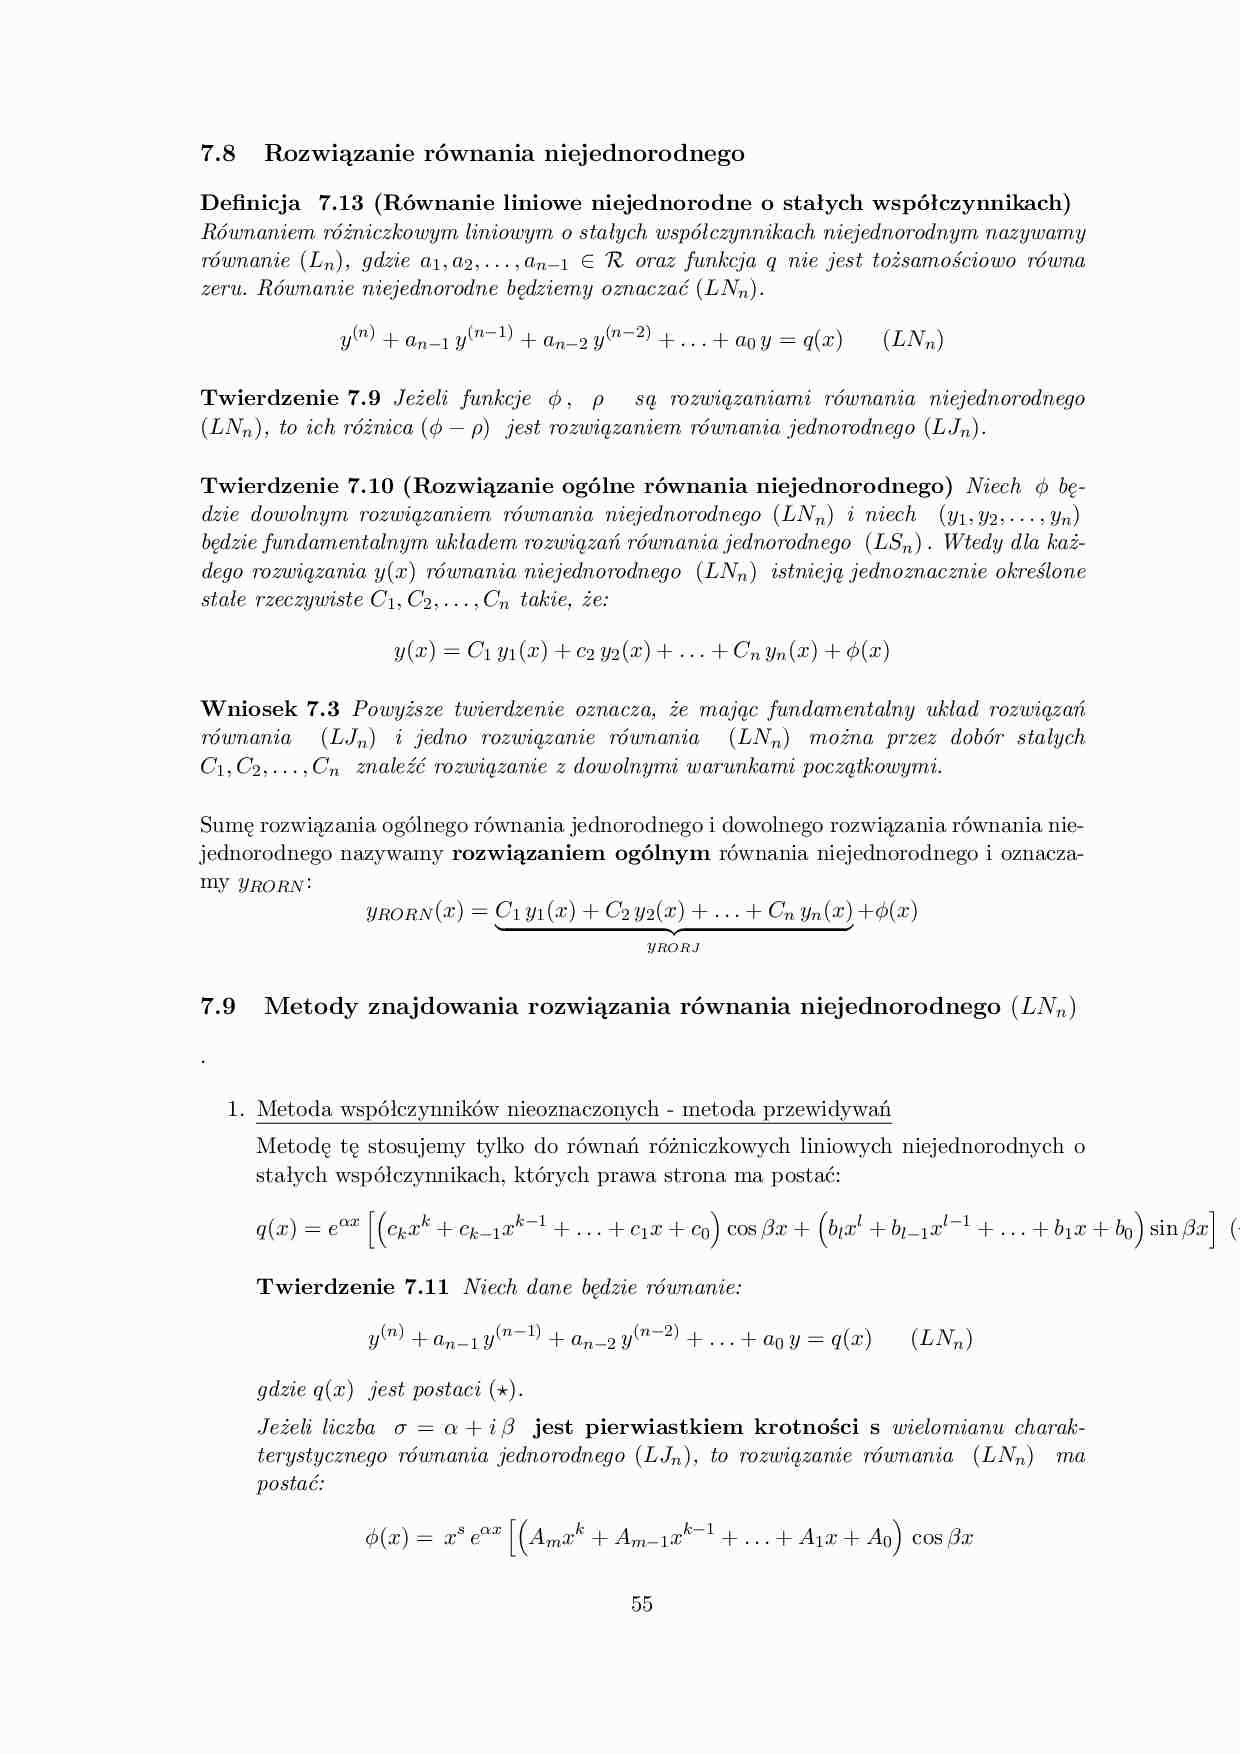 Rozwiazanie równania niejednorodnego - omówienie  - strona 1